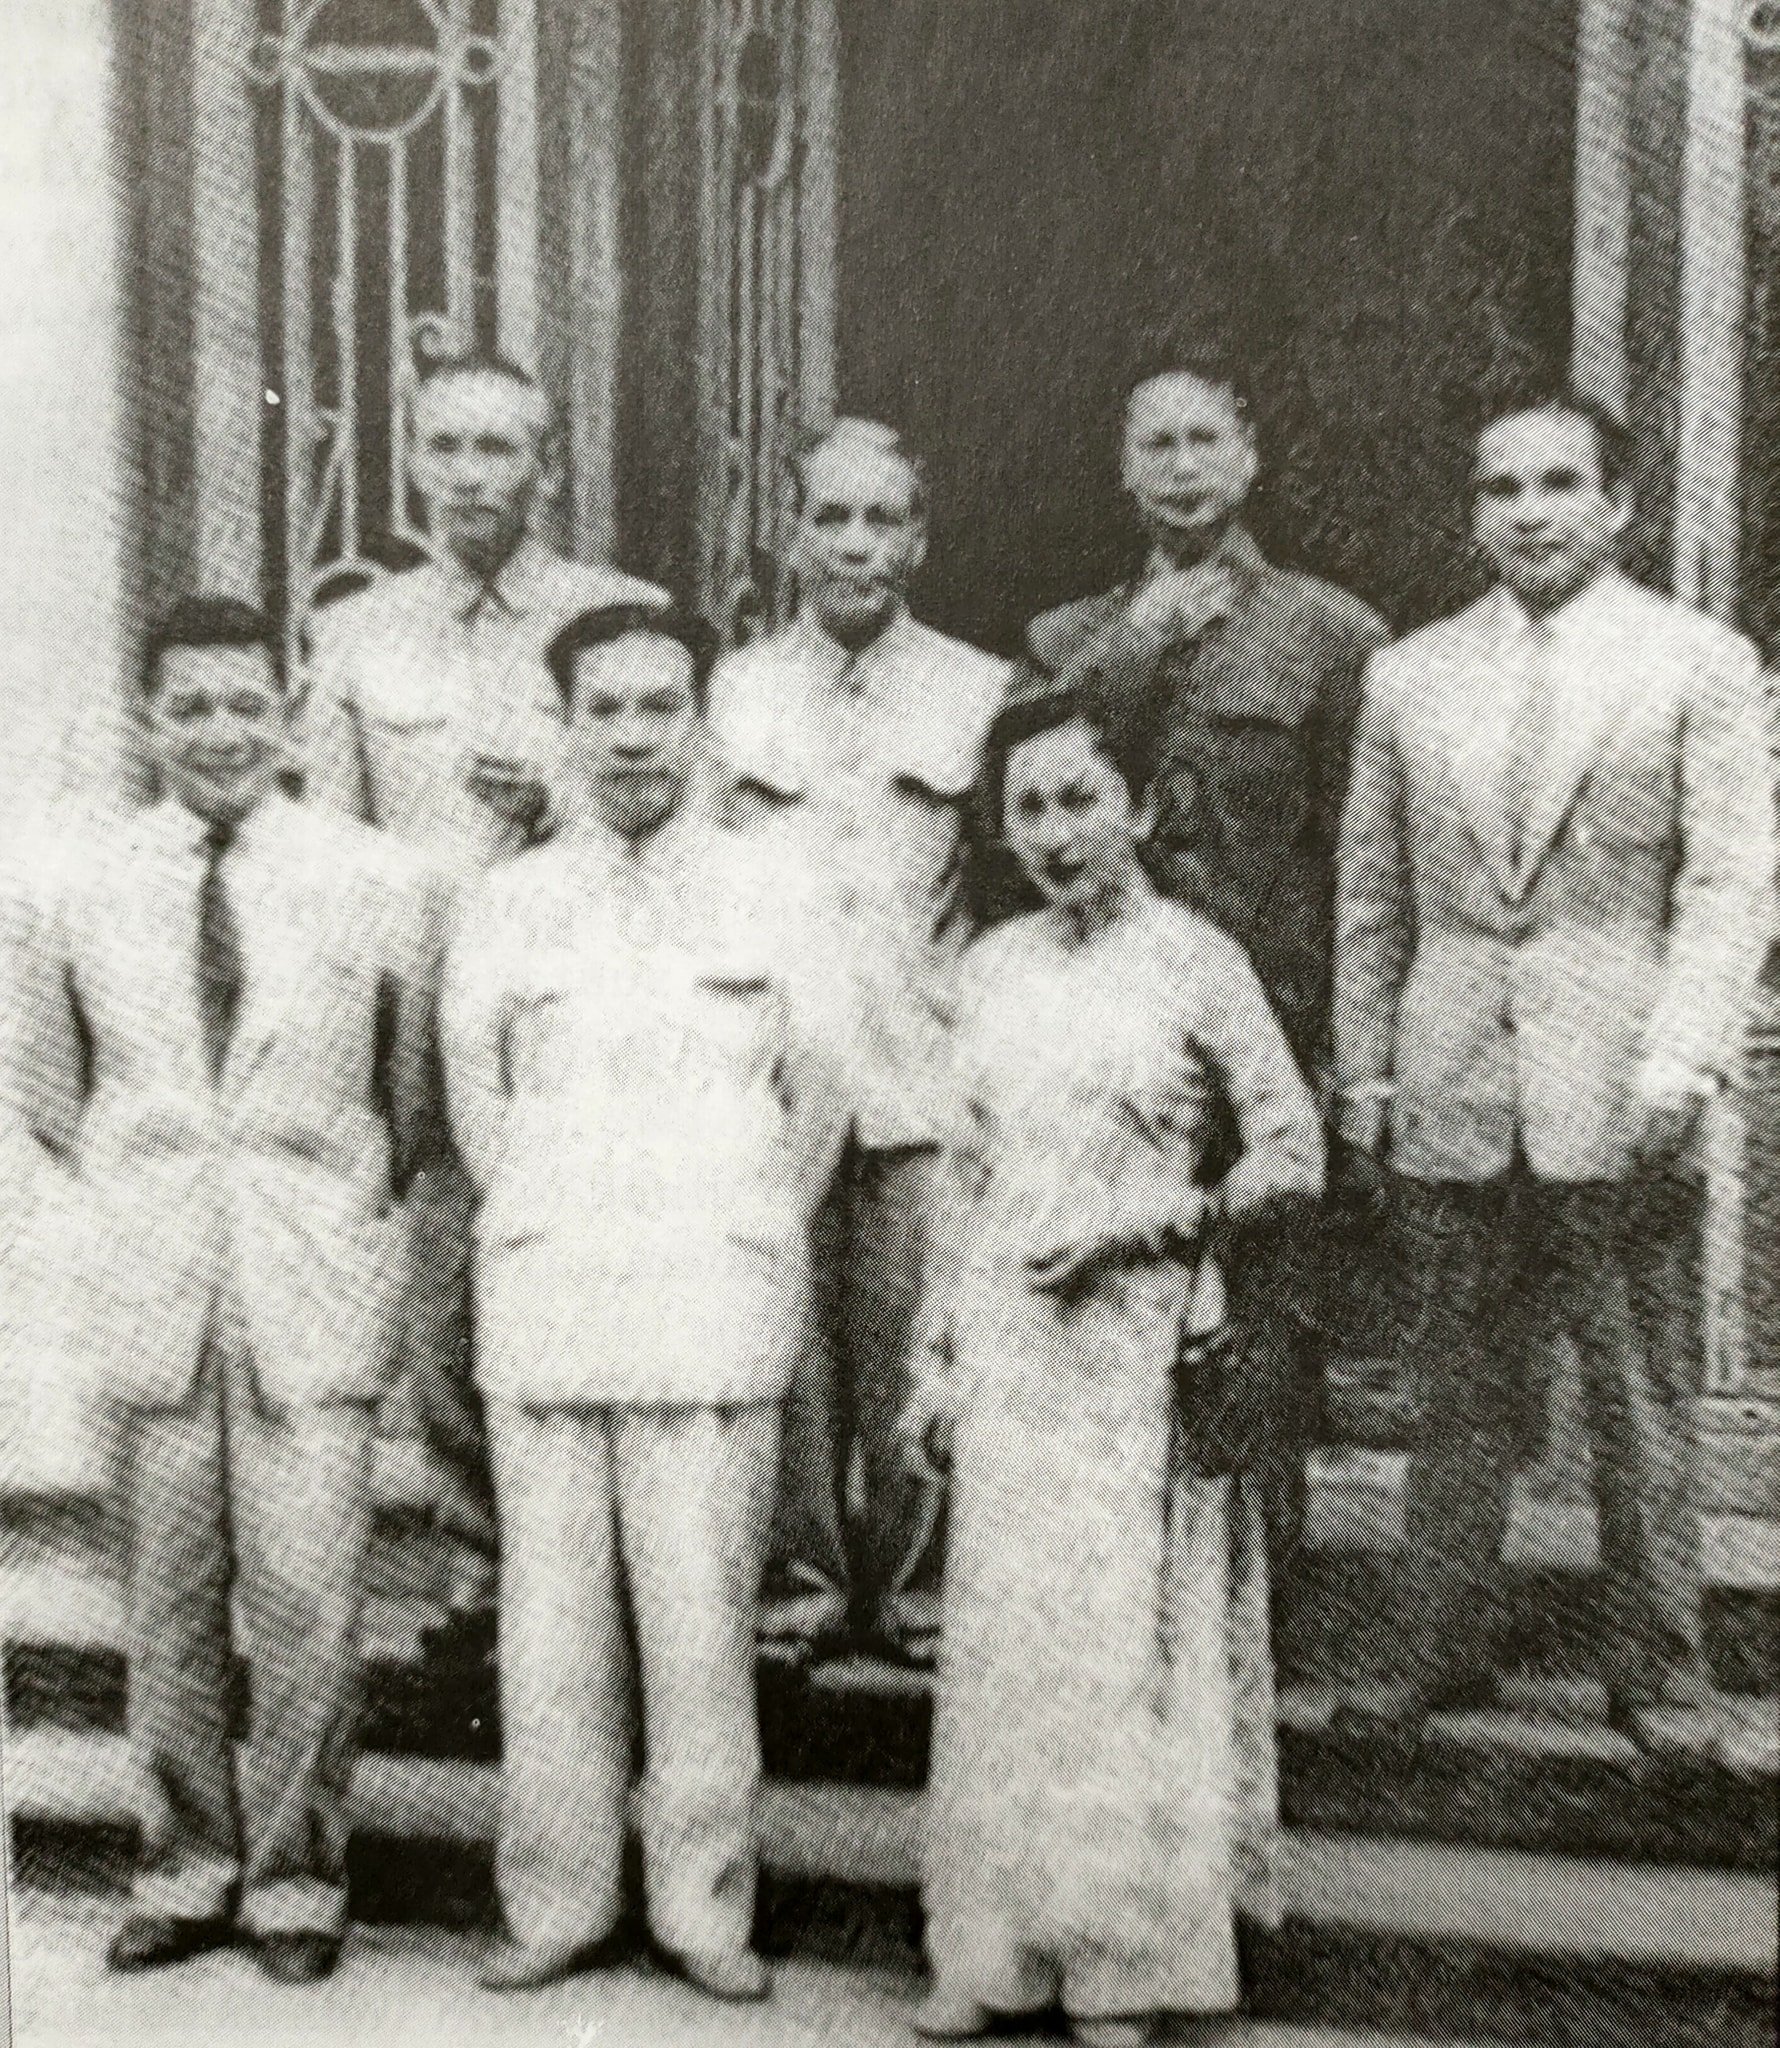 GS Trần Đức Thảo (hàng sau, thứ 2 từ phải qua) cùng các đồng nghiệp giảng dạy Đại học tại Hà Nội năm 1955. Ảnh: Tư liệu KMS.